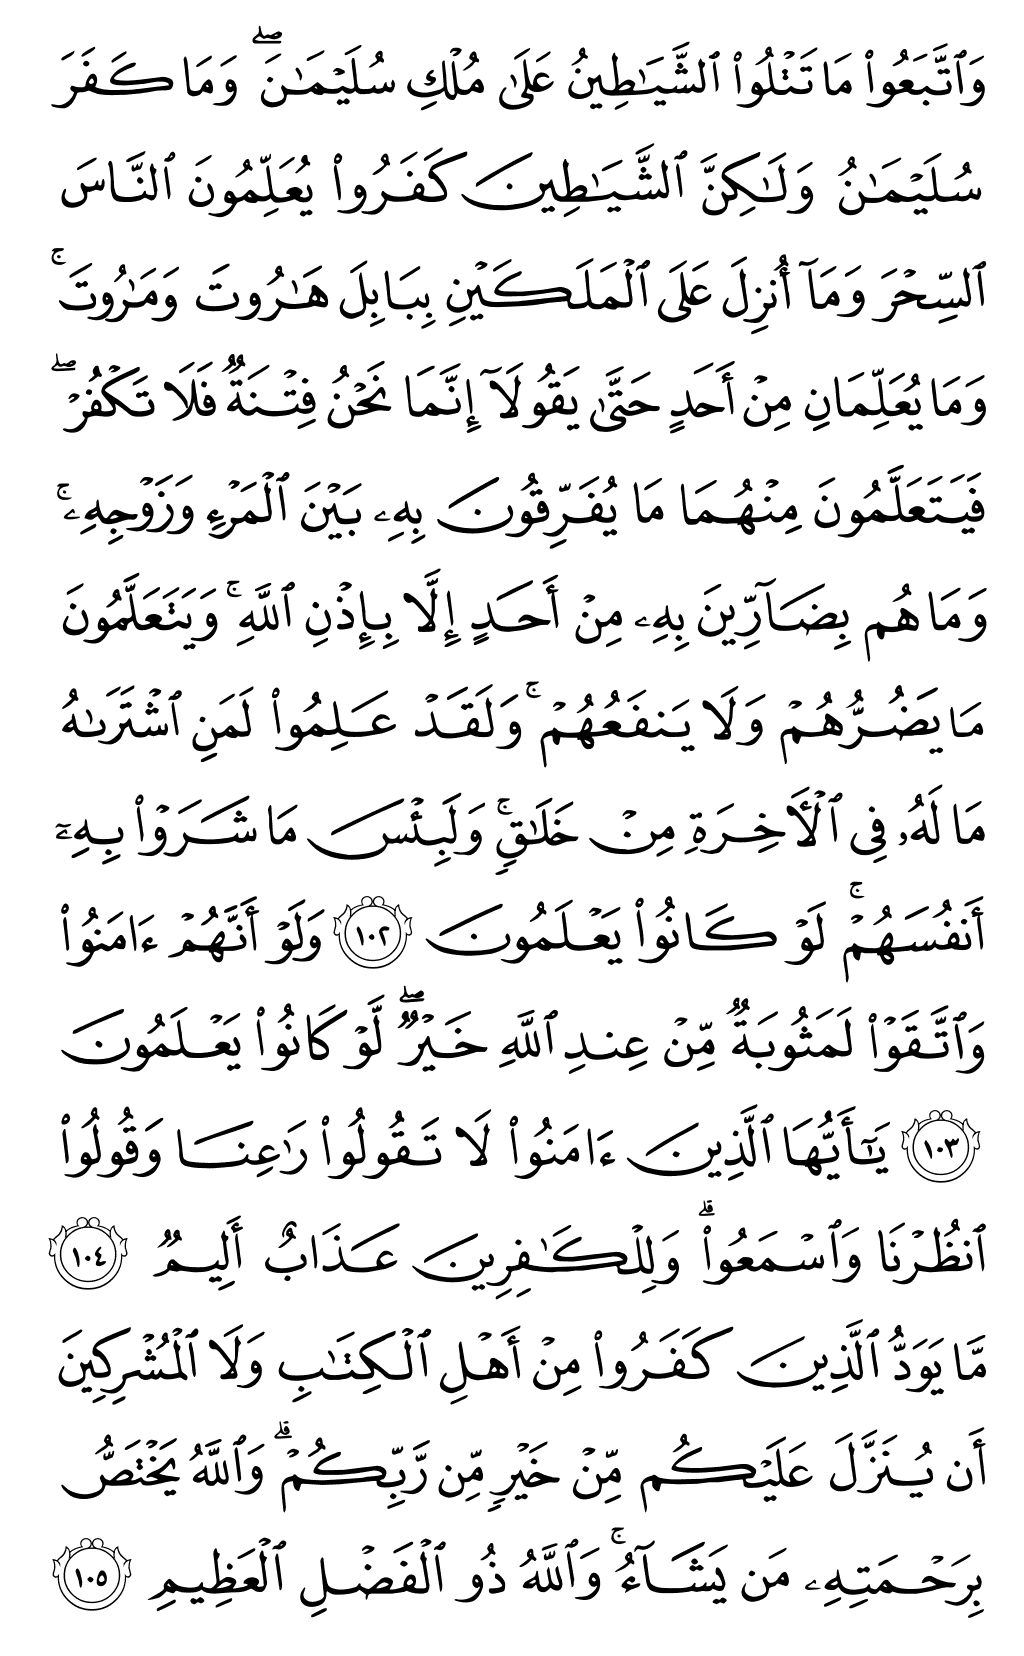 الصفحة رقم 16 من القرآن الكريم